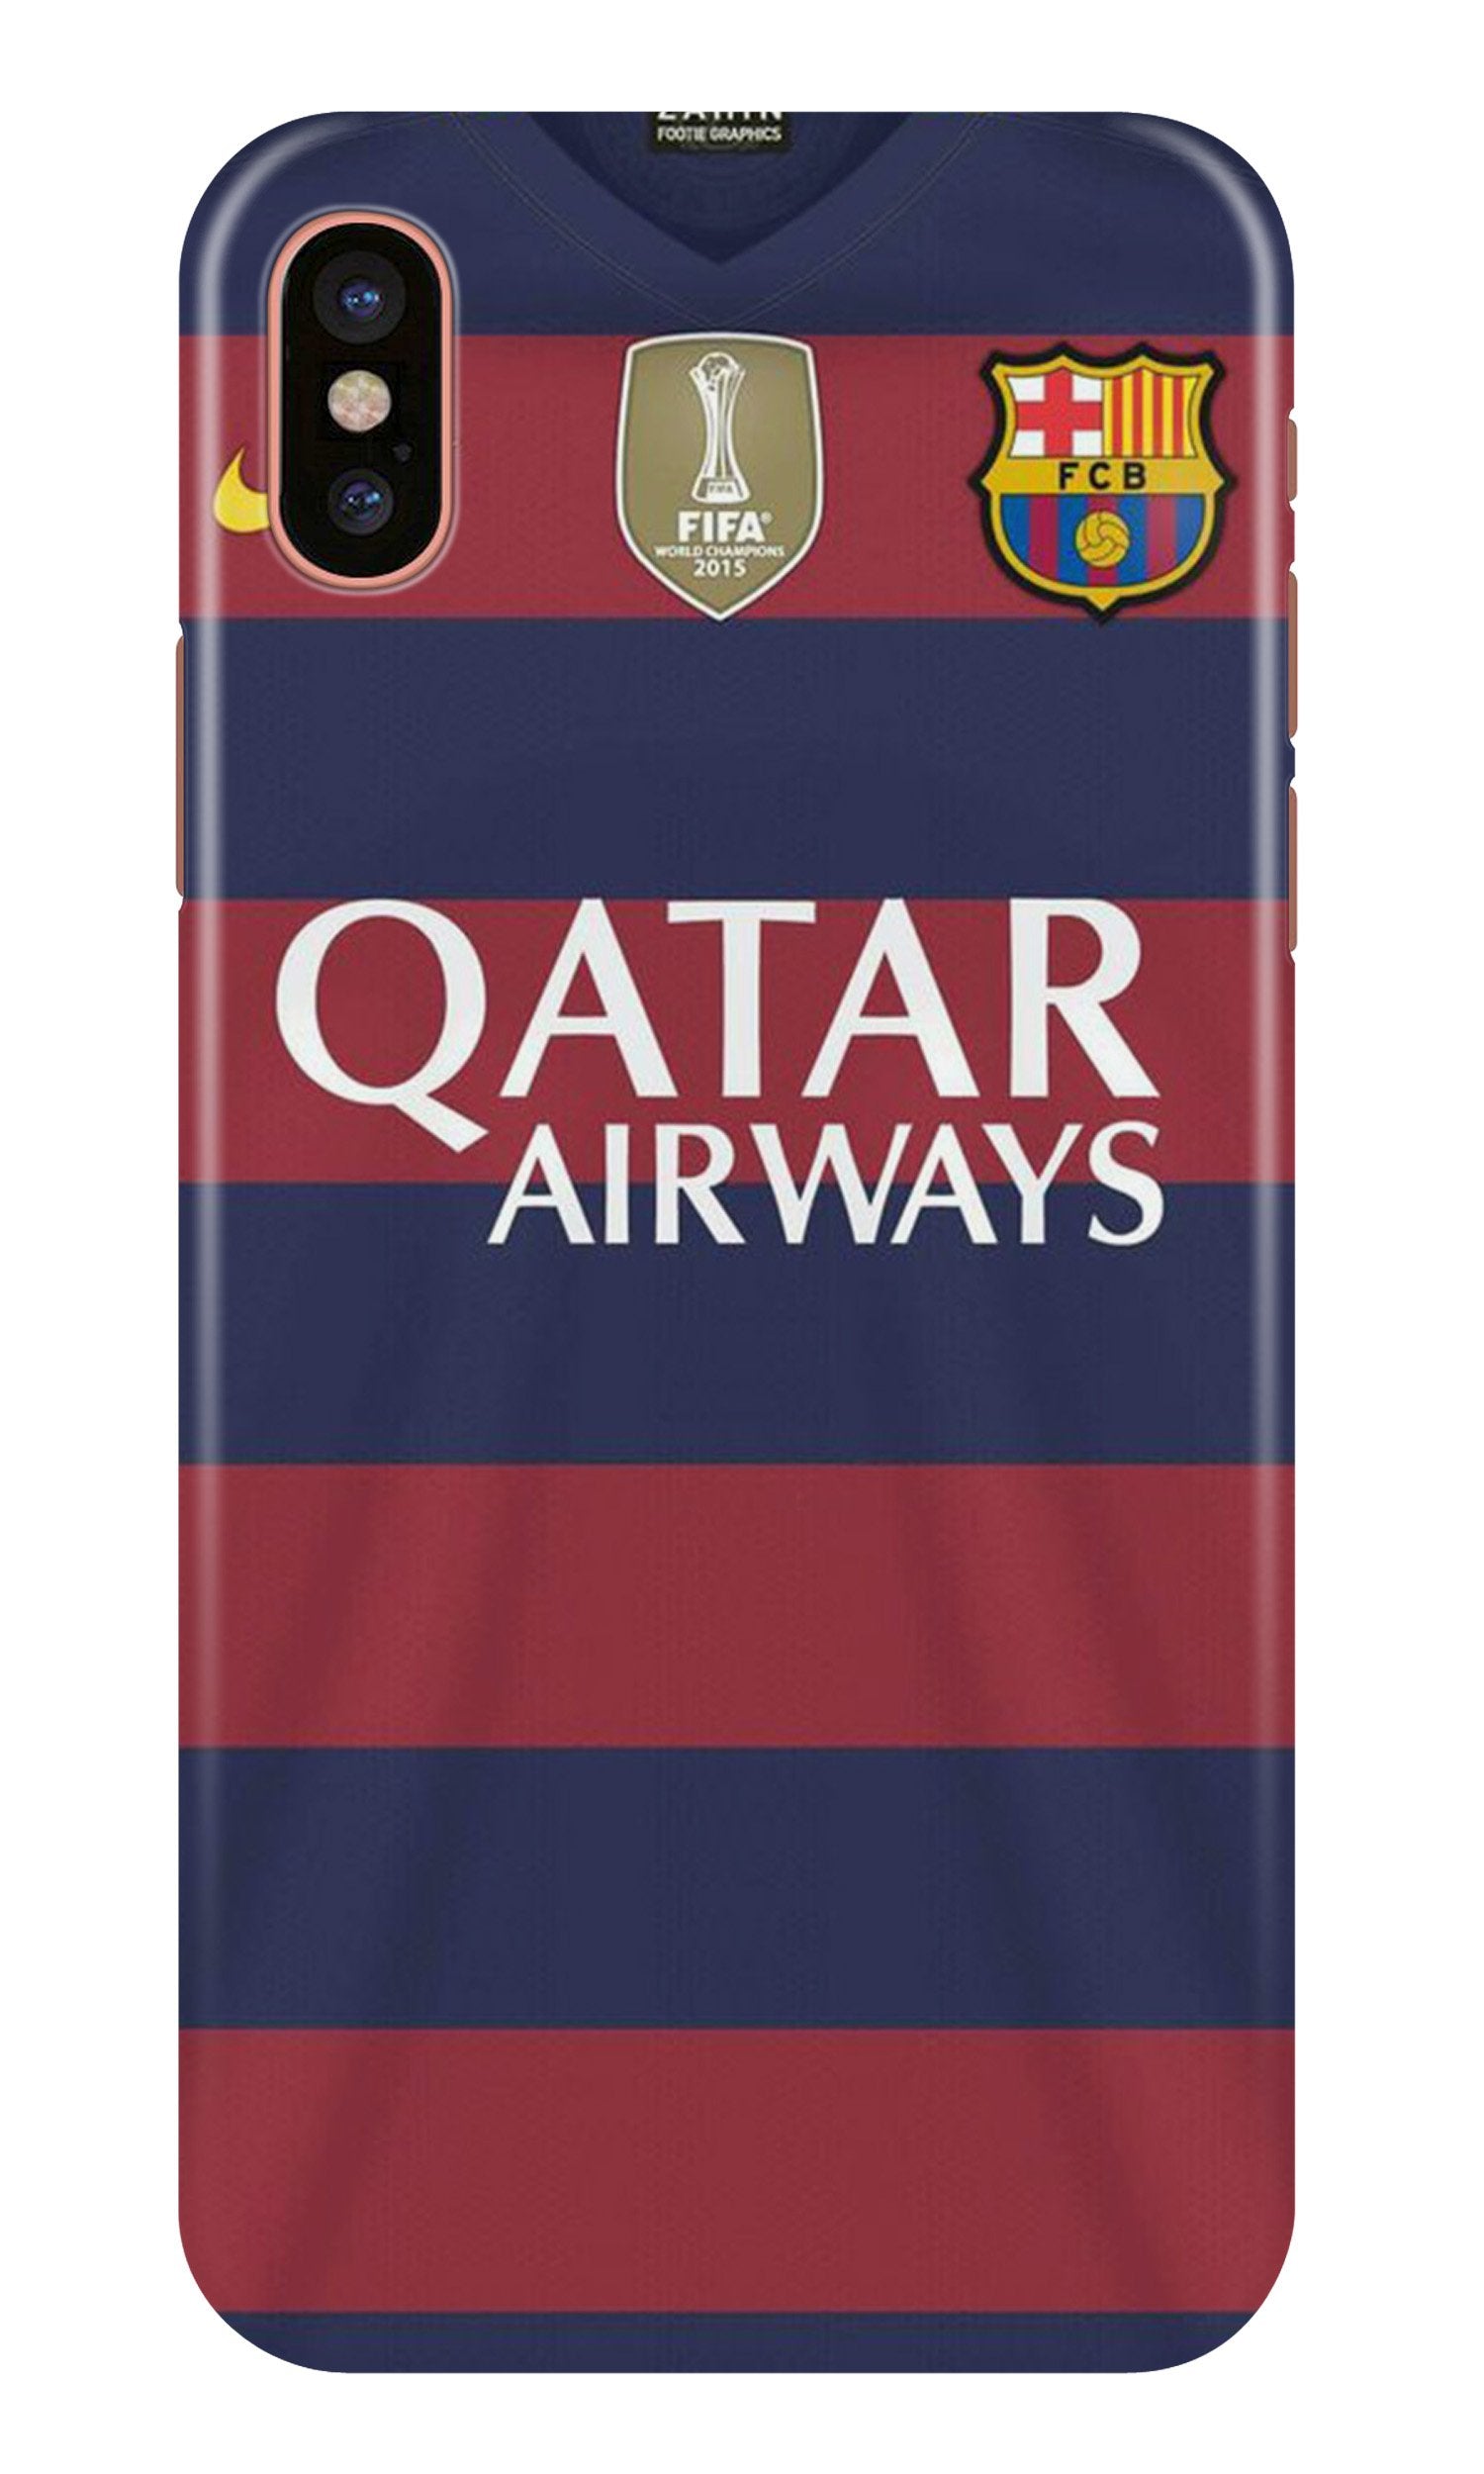 Qatar Airways Case for iPhone X(Design - 160)